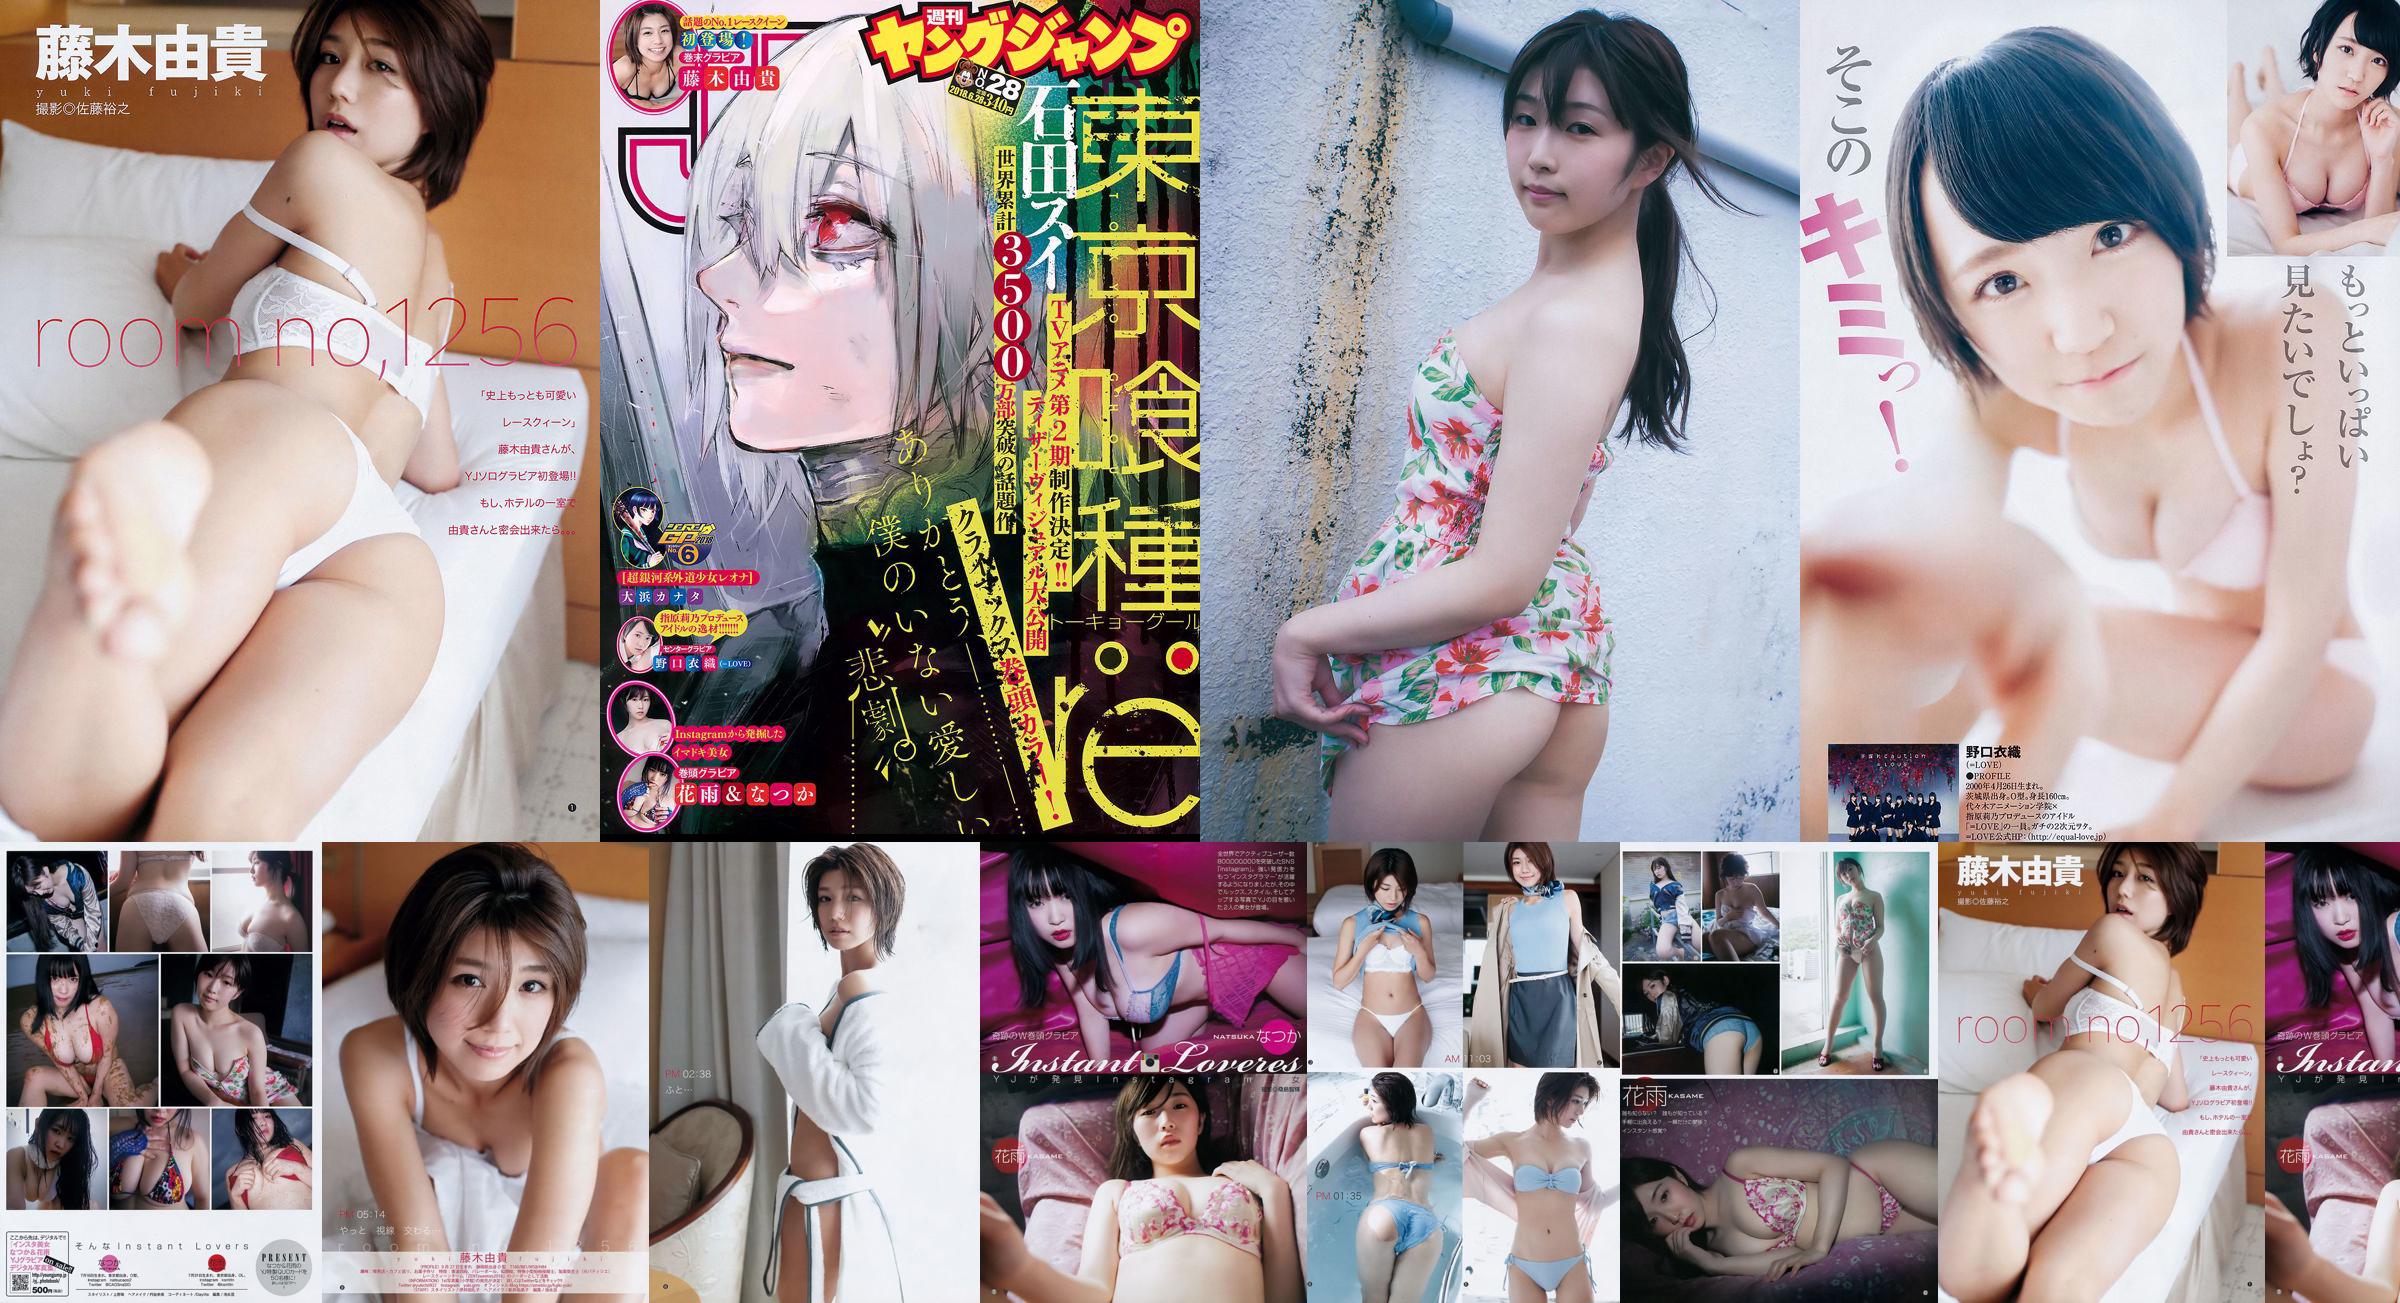 なつか Hanayu Noguchi Yiori Fujiki Yuki [Weekly Young Jump] 2018 No. 28 Photo Magazine No.4a3a2e Page 2